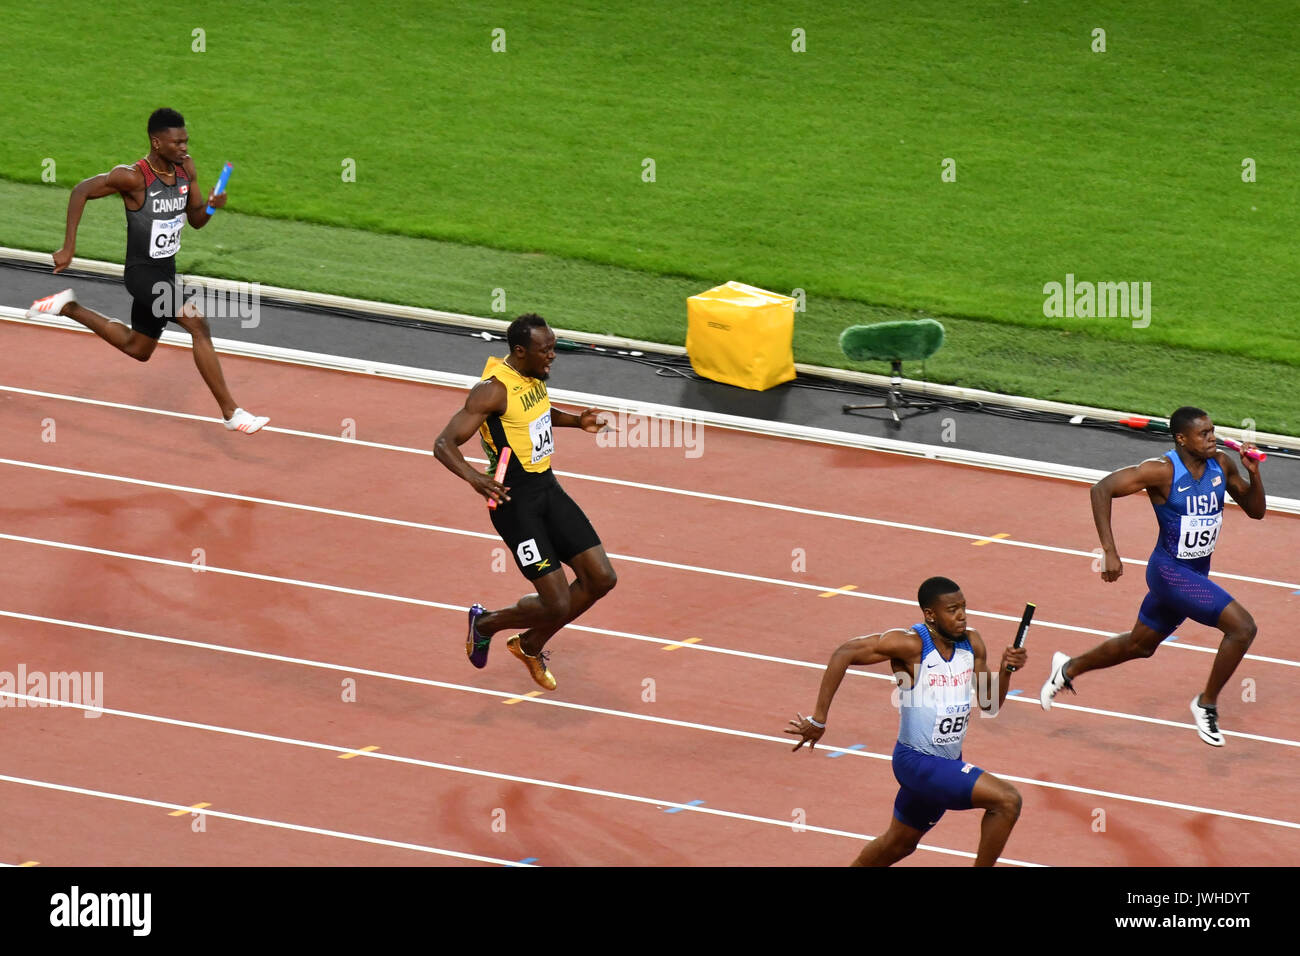 Queen Elizabeth Park, London, UK. 12 Aug, 2017. IAAF Weltmeisterschaften. Tag 9. Herren 4x100-Meter-Staffel endgültig. Usain Bolt zieht sich verletzt. Quelle: Matthew Chattle/Alamy leben Nachrichten Stockfoto